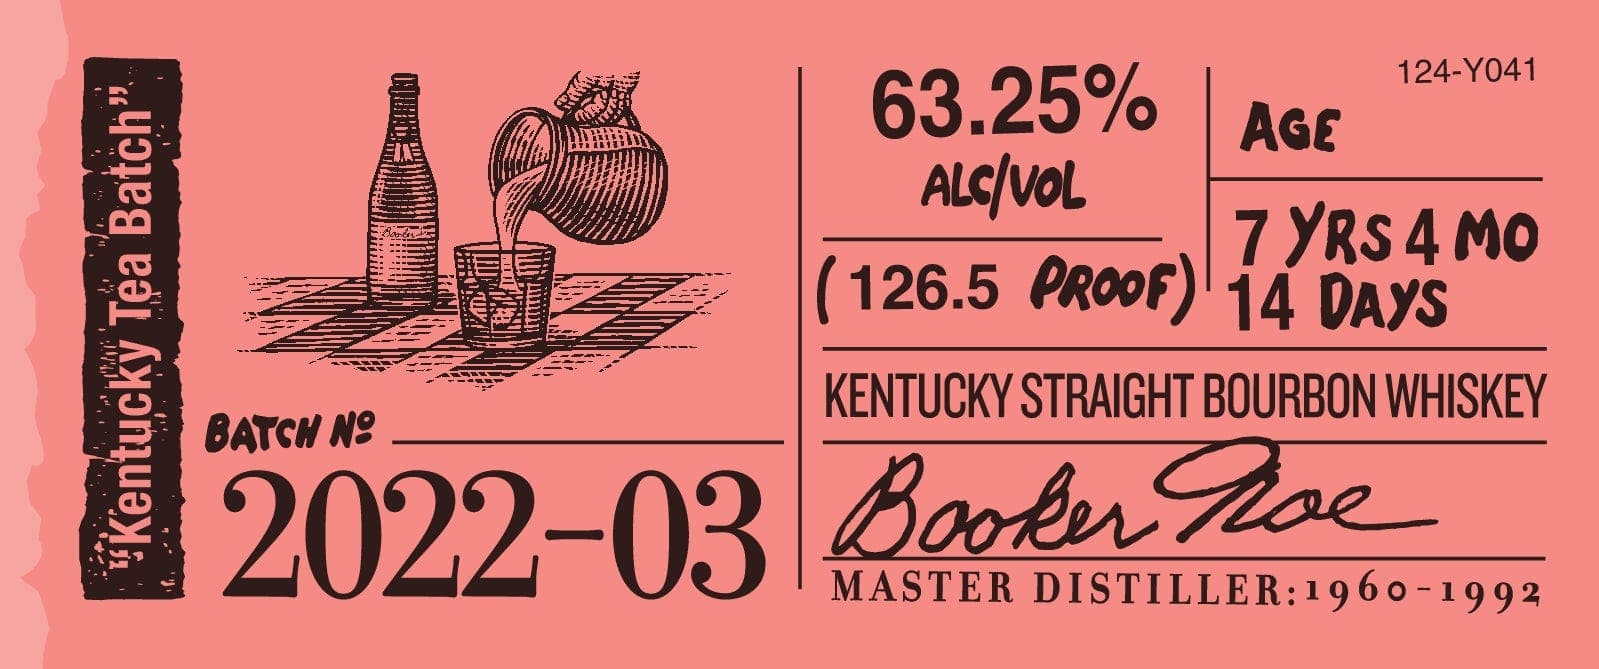 Bookers Batch 2022-03 Kentucky Tea Batch - Barbank